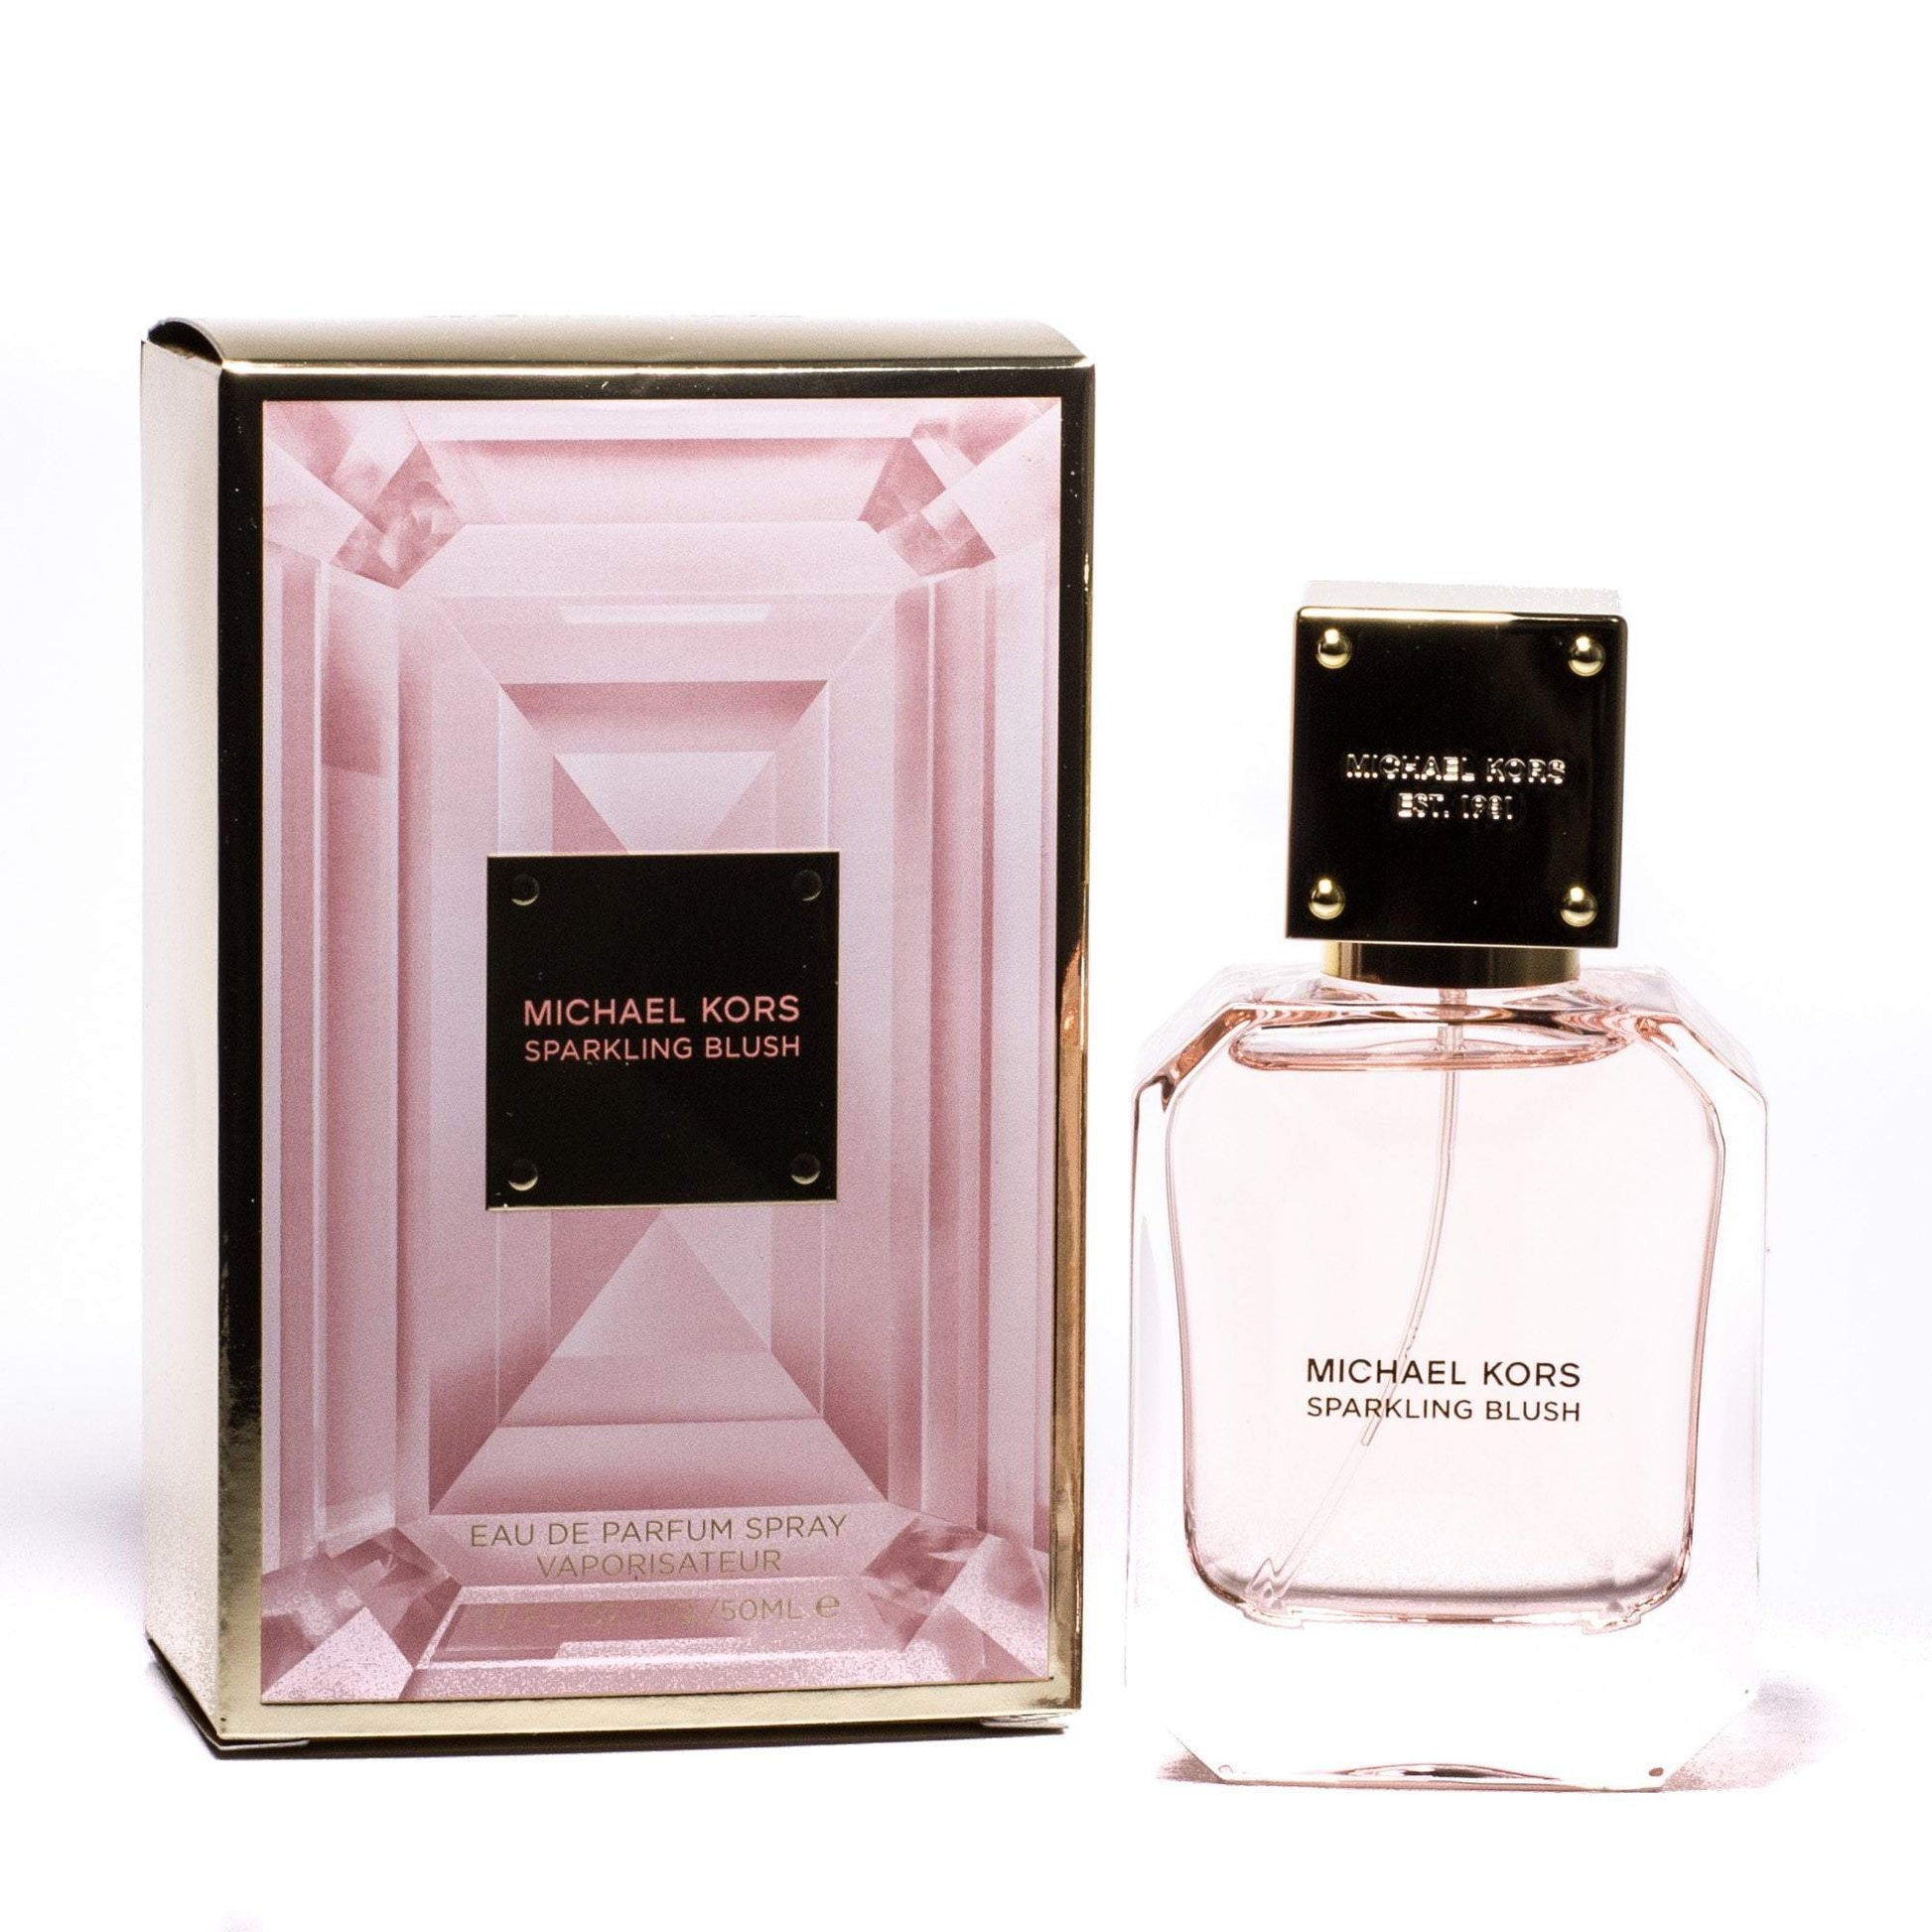 Sparkling Blush Eau de Parfum Spray for Women by Michael Kors, Product image 1